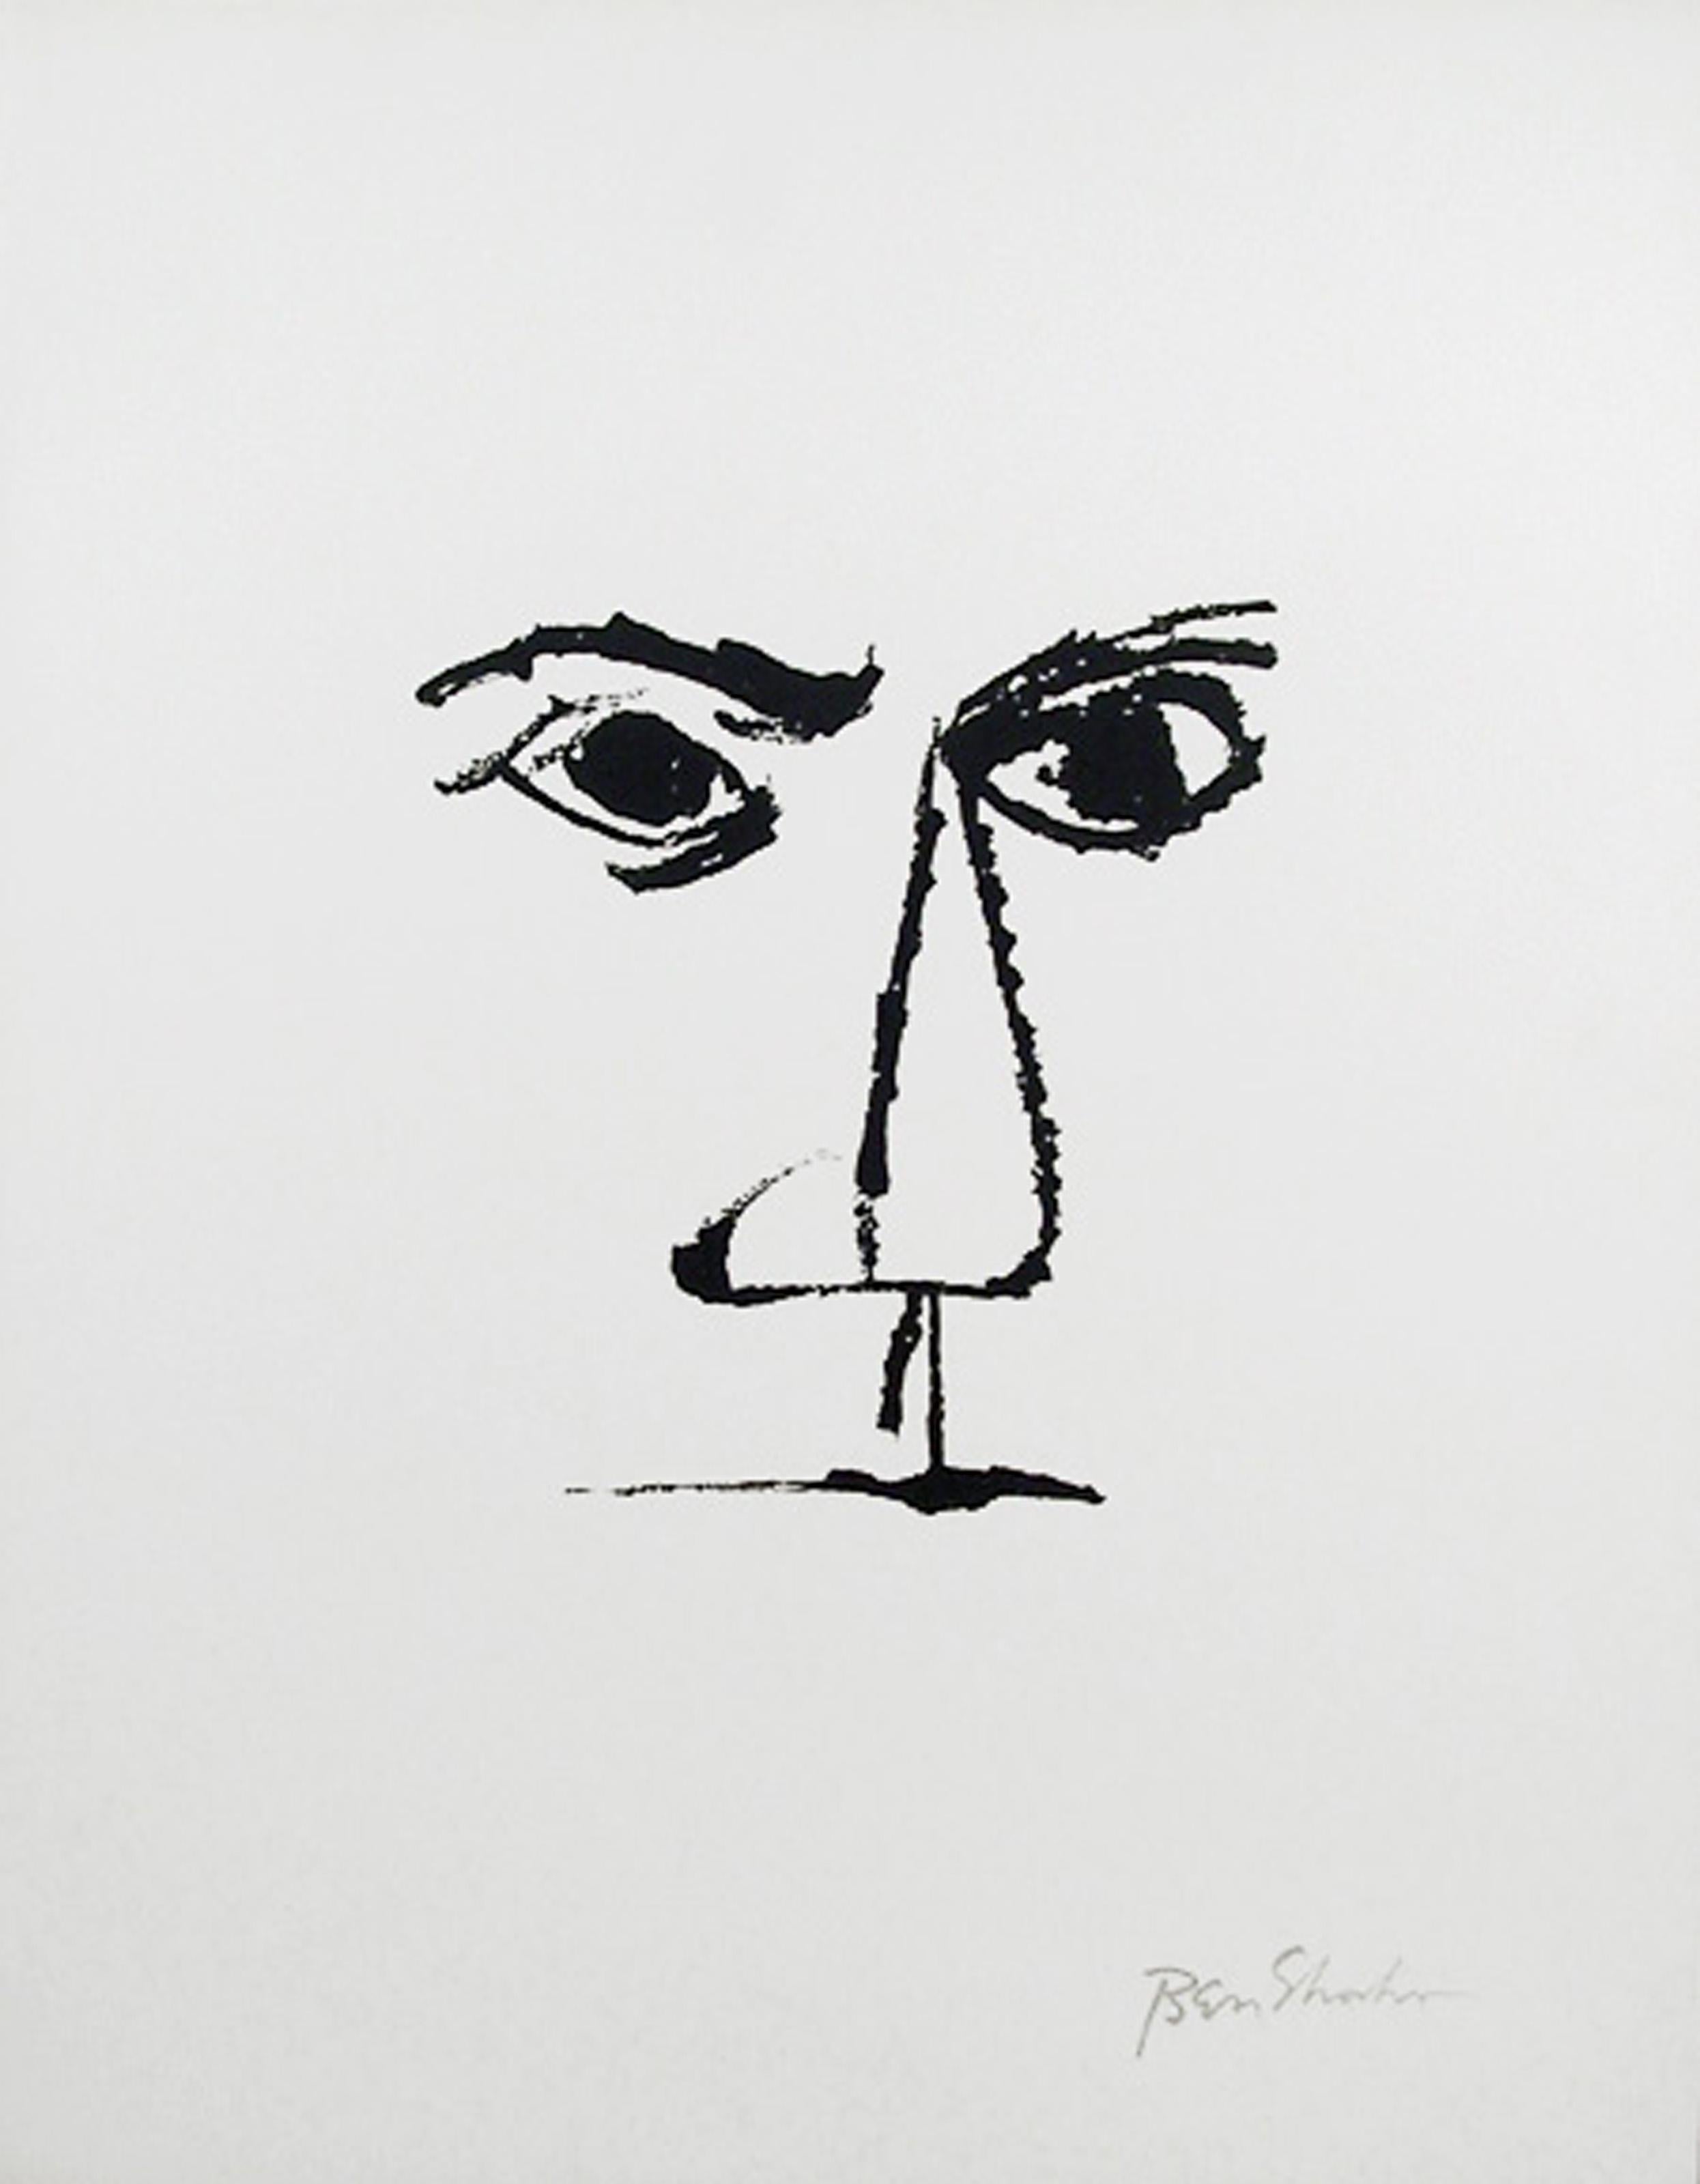 Artistics : Ben Shahn, Américain (1898 - 1969)
Titre : Frontispice (Portrait) du Portfolio Rilke
Année : 1968
Moyen d'expression : Lithographie sur Arches, signée dans la plaque
Edition : 750
Taille : 22.5 x 17.75 in. (57.15 x 45.09 cm)

Imprimeur :